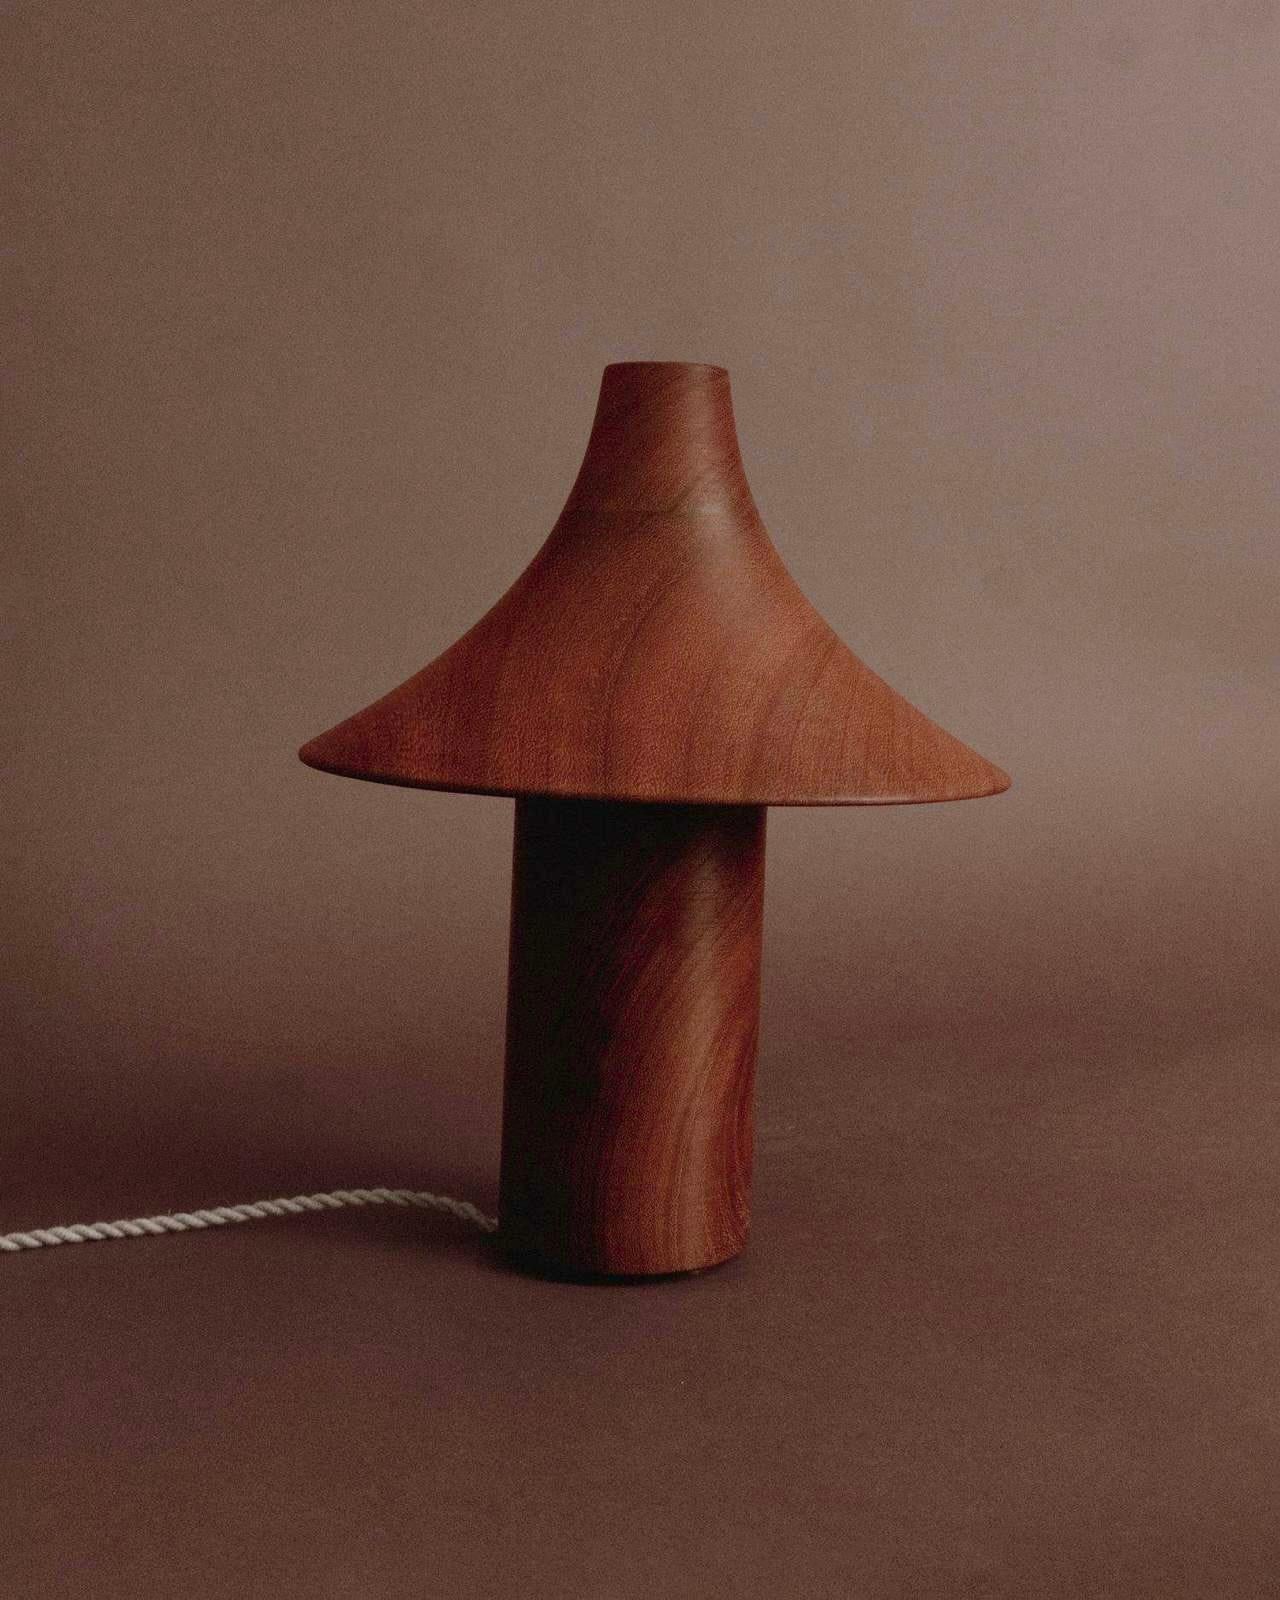 Diese handgefertigten Lampen sind Einzelstücke aus Massivholz, die von einem erfahrenen Drechsler mit über 30 Jahren Erfahrung auf einer traditionellen Drehbank gedreht werden. Der Ton und die Richtung der Wachstumsringe des Holzes sind wie ein